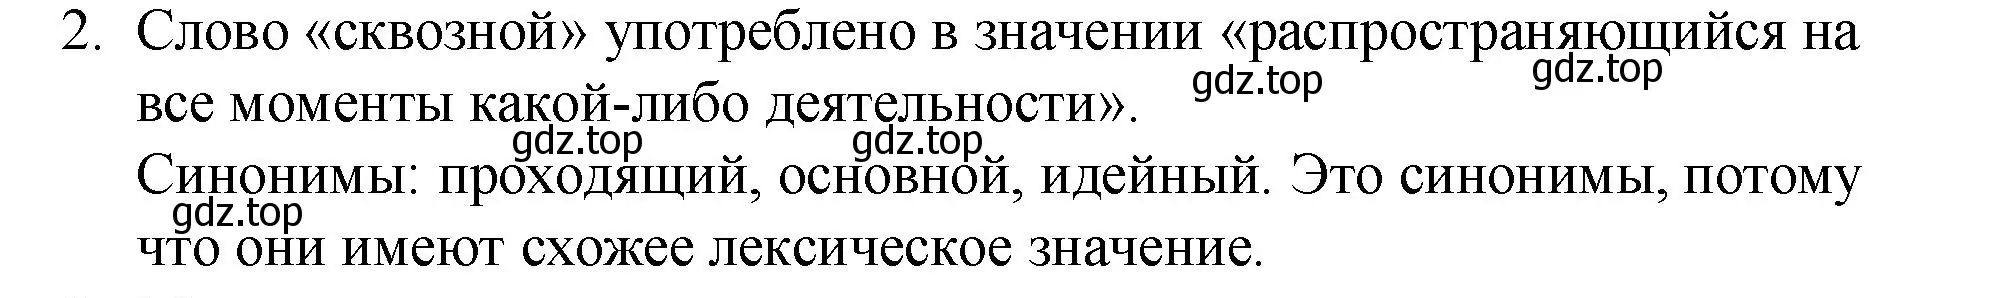 Решение номер 2 (страница 350) гдз по русскому языку 10-11 класс Гольцова, Шамшин, учебник 2 часть